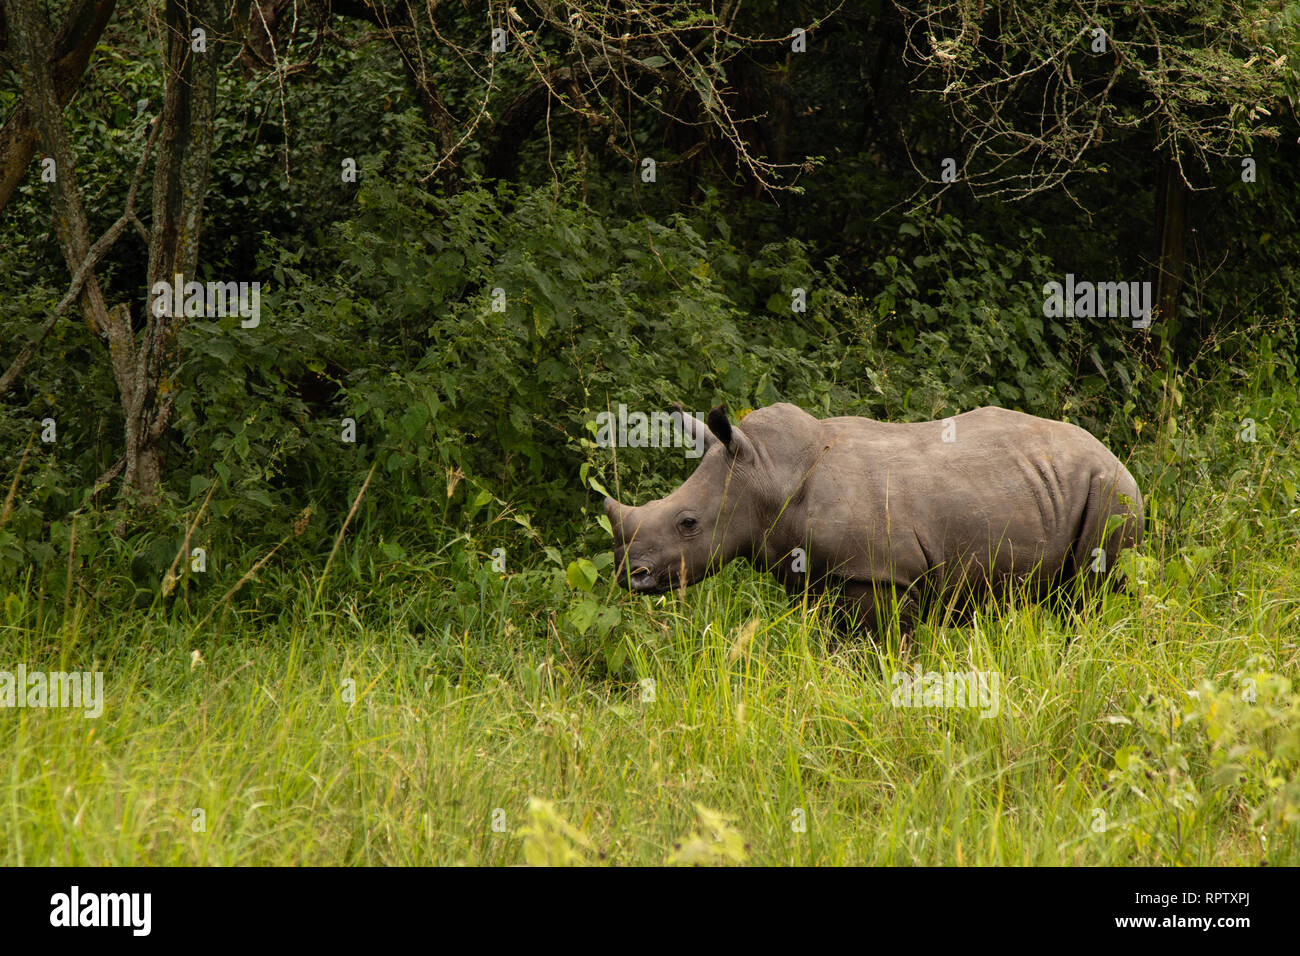 Un rhinocéros blanc (Ceratotherium simum) pâturage dans parmi les hautes herbes au sanctuaire de rhinocéros Ziwa, basé en Ouganda Banque D'Images